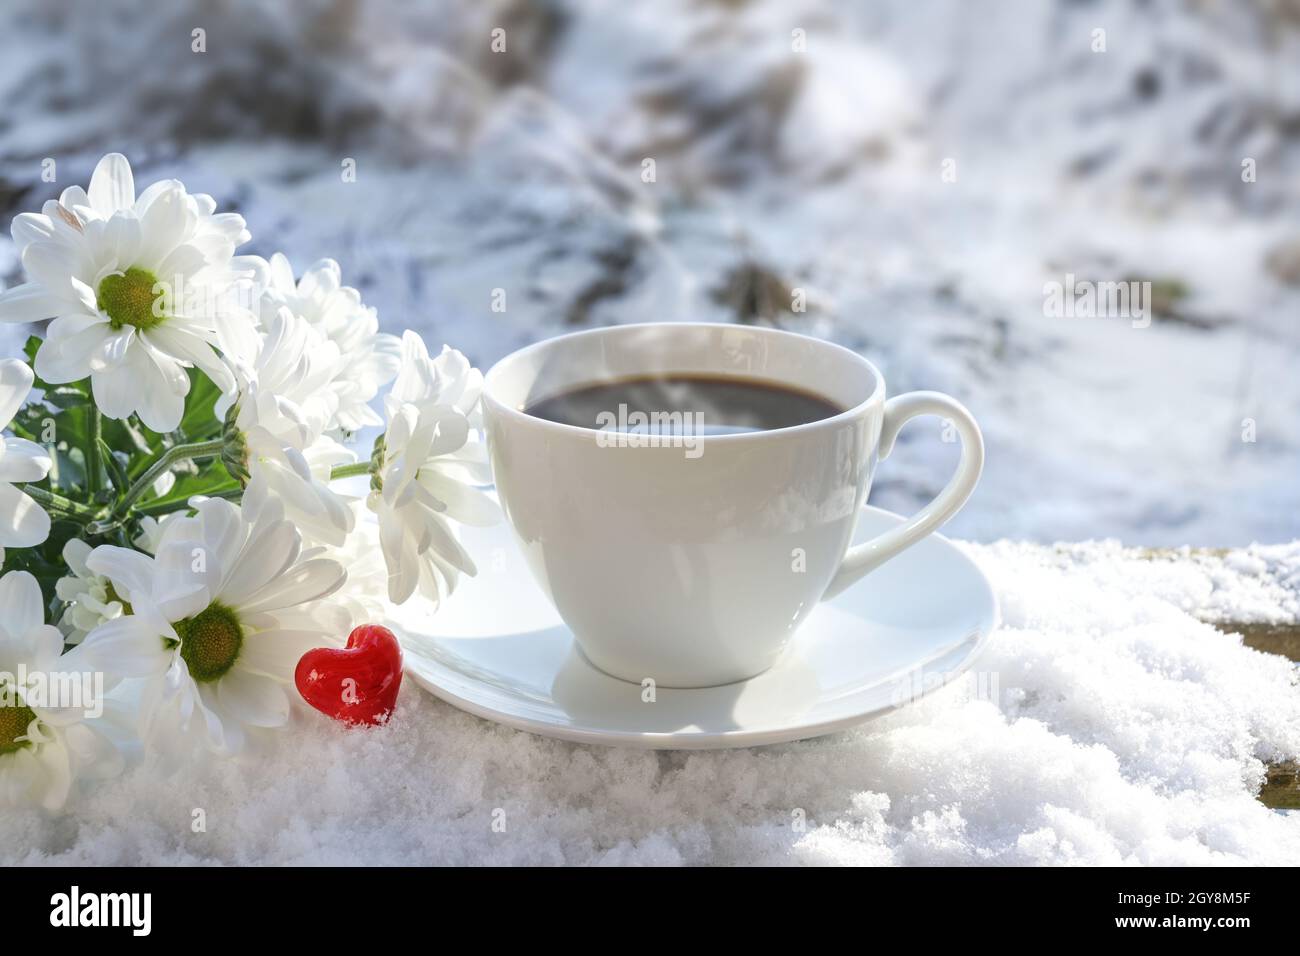 Frühstück im Freien im Winter mit Liebe, dampfende Kaffeetasse, weiße Blumen und ein rotes Glas Herz auf einem schneebedeckten Gartentisch an einem sonnigen Tag im n Stockfoto